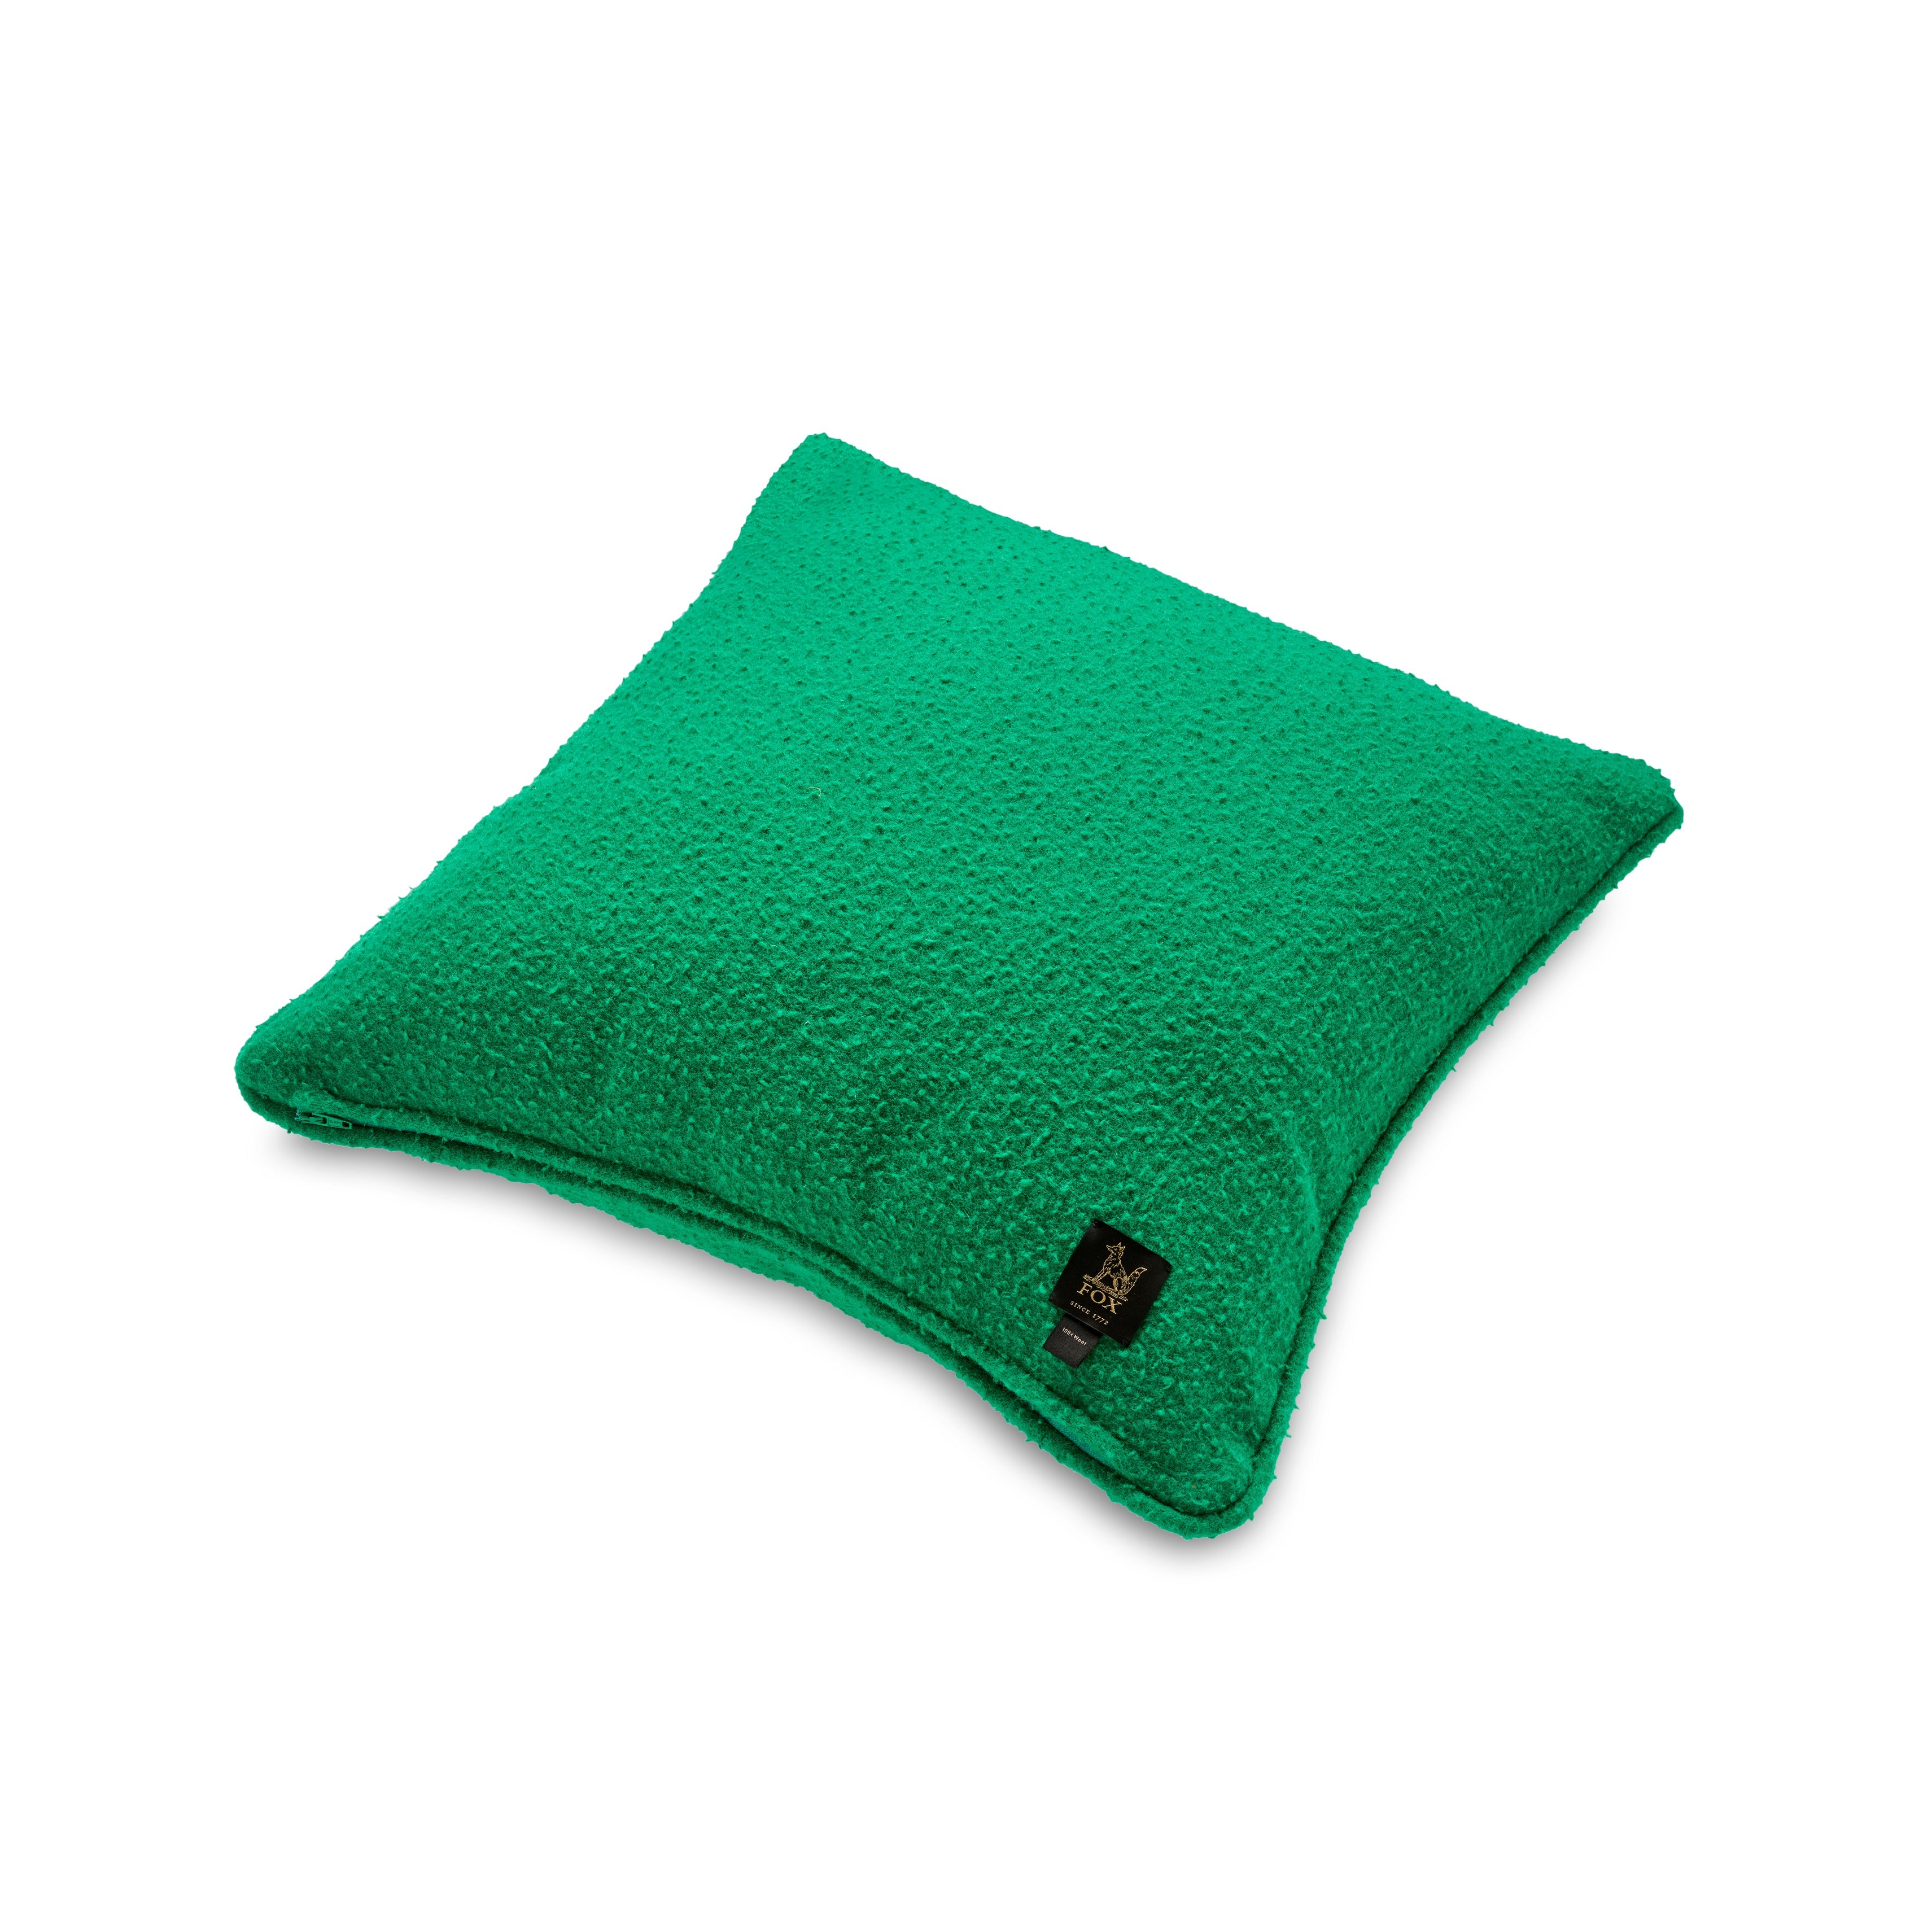 Casentino Grass Green Cushion